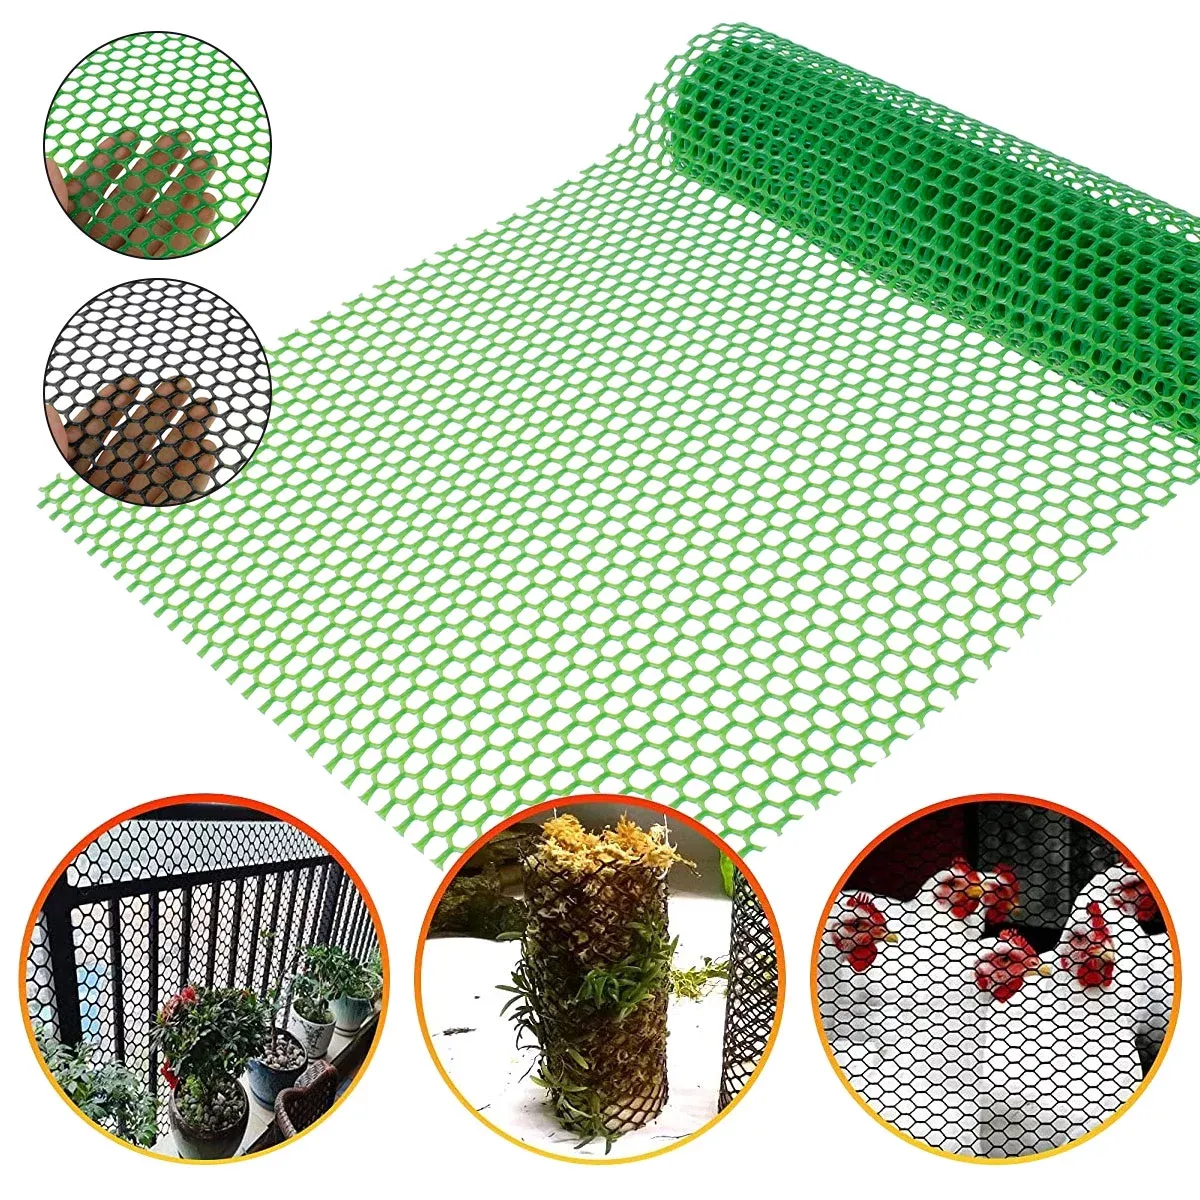 Hochleistungs-Gartenschutzgitter aus Kunststoff mit Hex-Gitter verfügbar in grün, schwarz, weiß und orange für Hühnerdrahtzaun